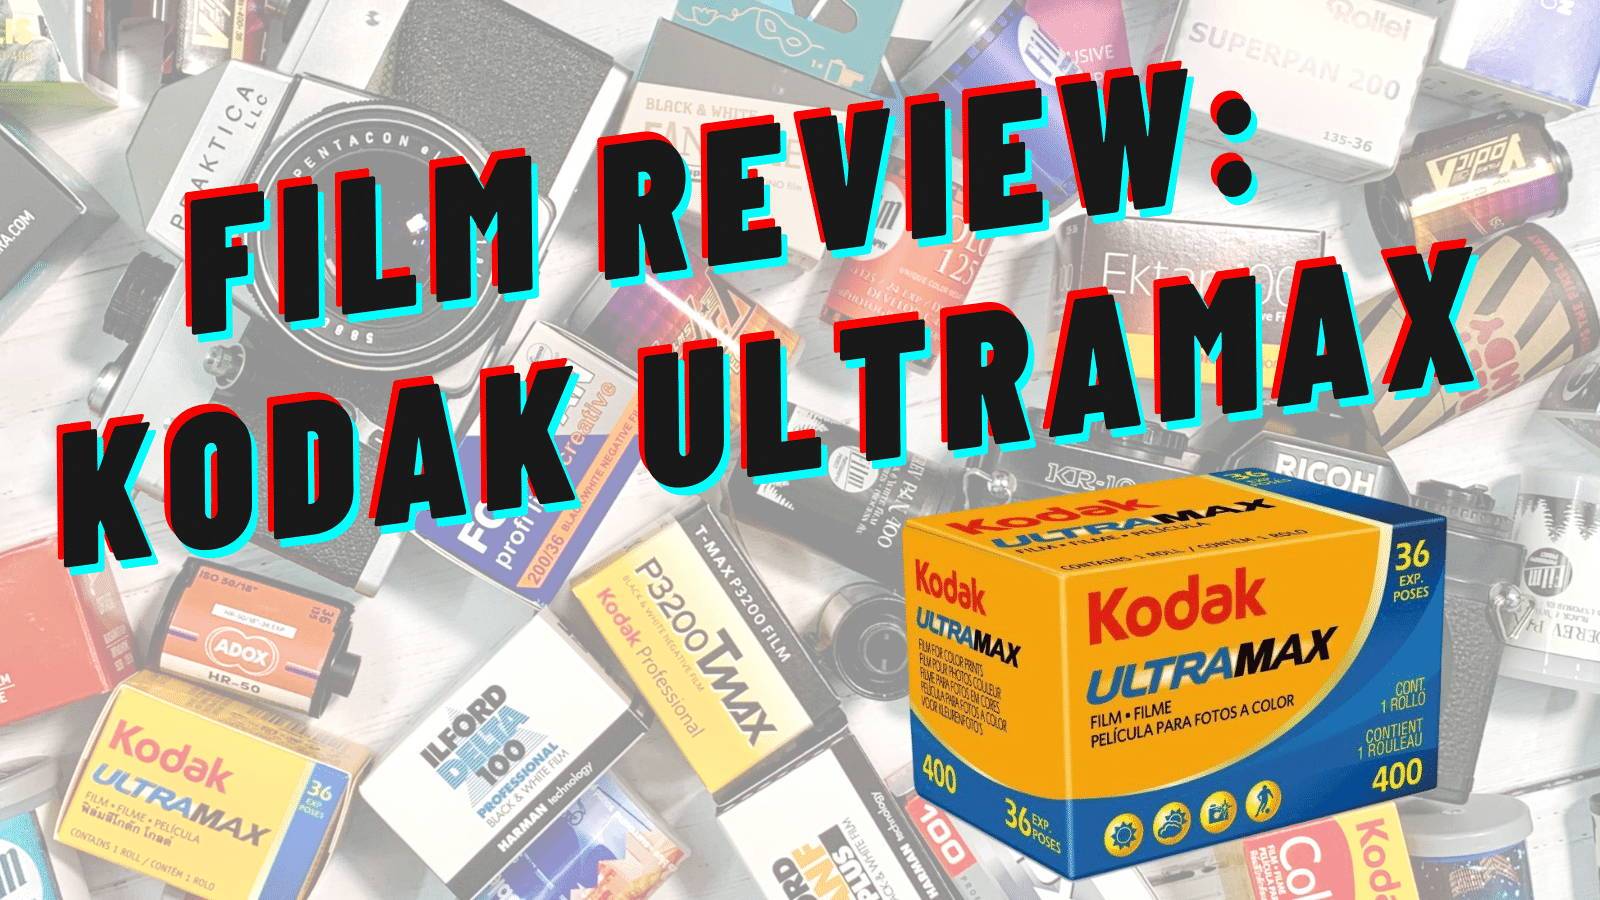 Kodak Ultramax 400 36exp